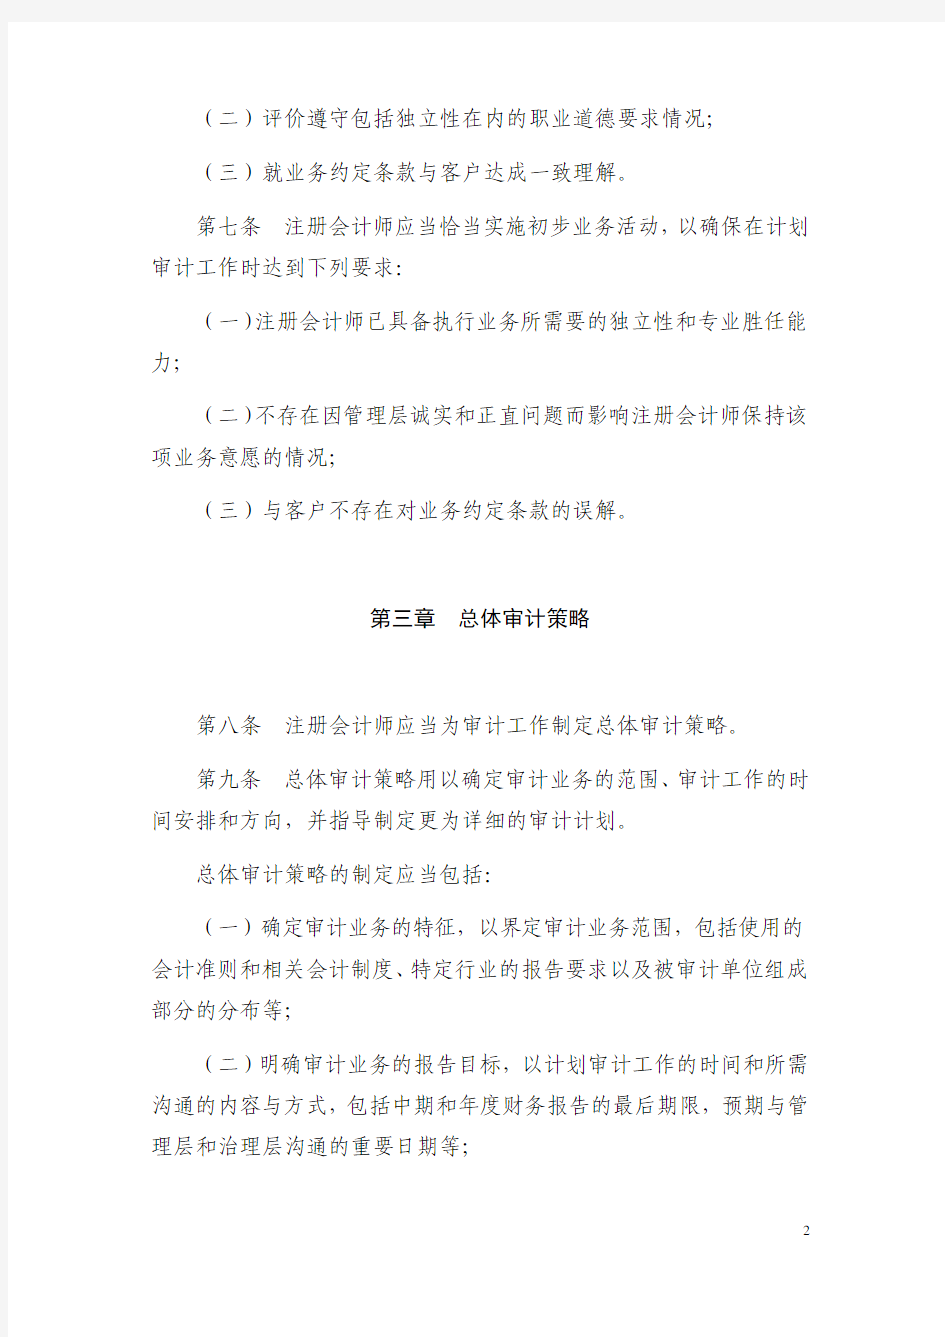 5中国注册会计师审计准则第X号计划审计工作(修订)(征求